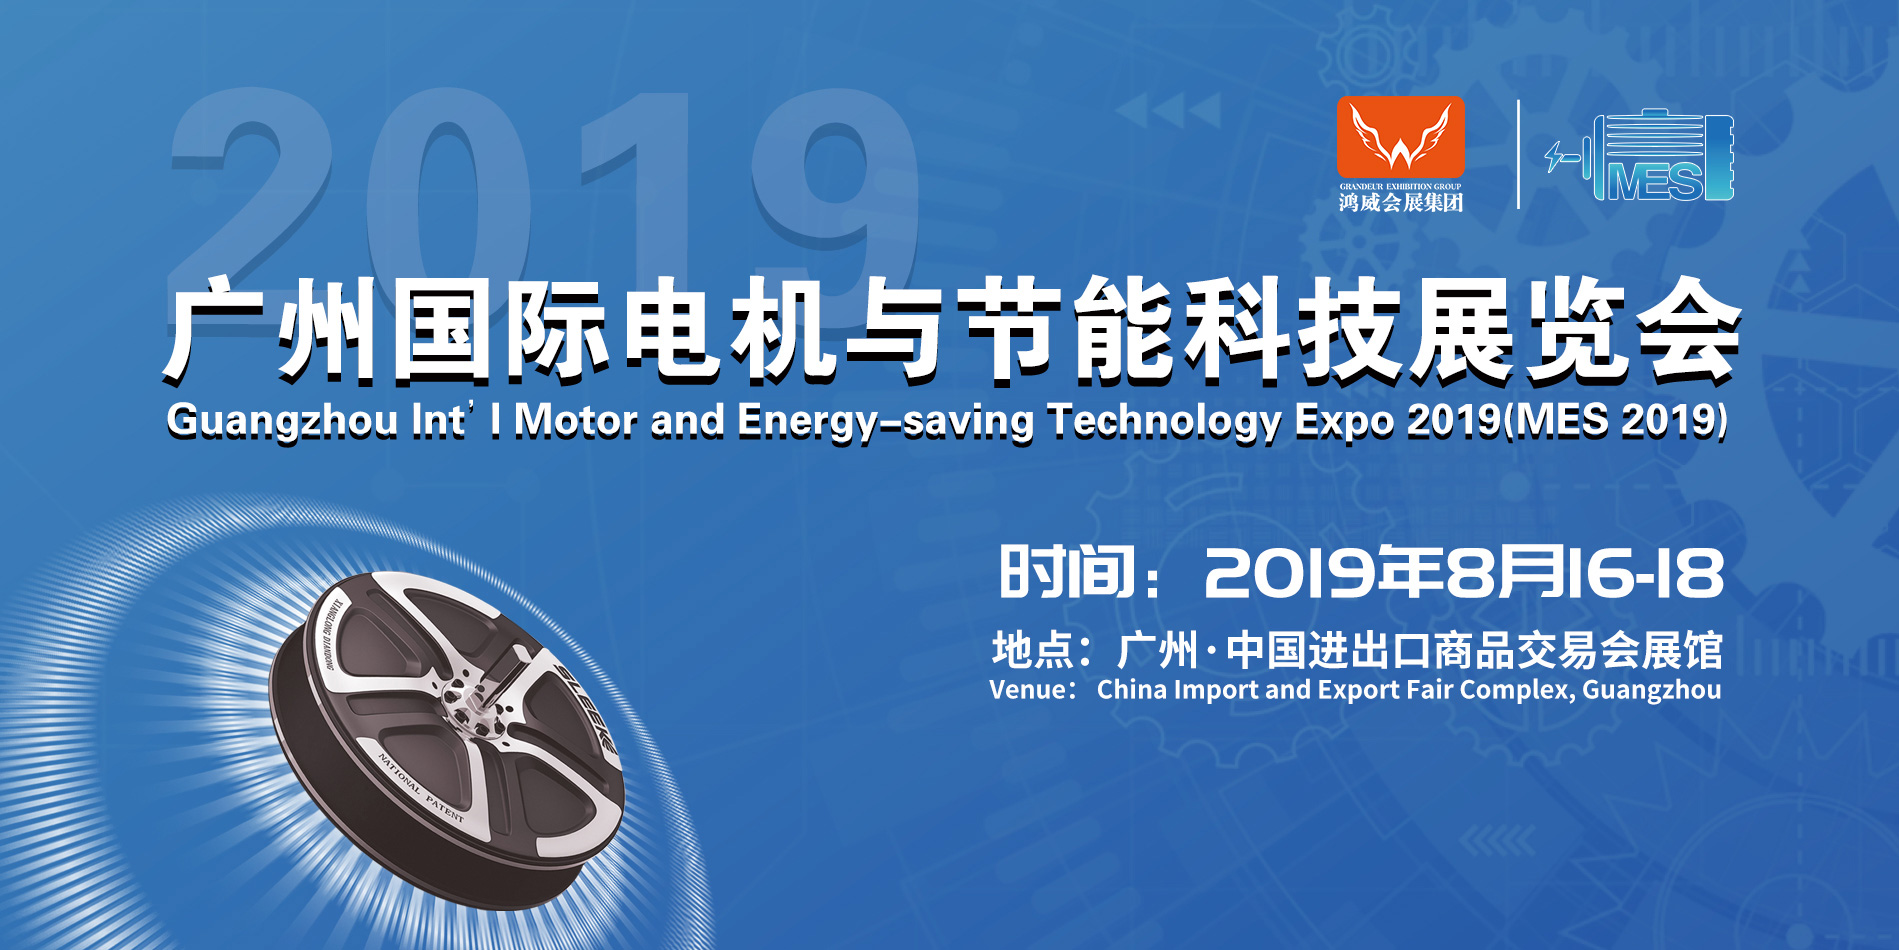 友貿電機(深圳)有限公司 參加 2019廣州國際電機與節能科技展覽會